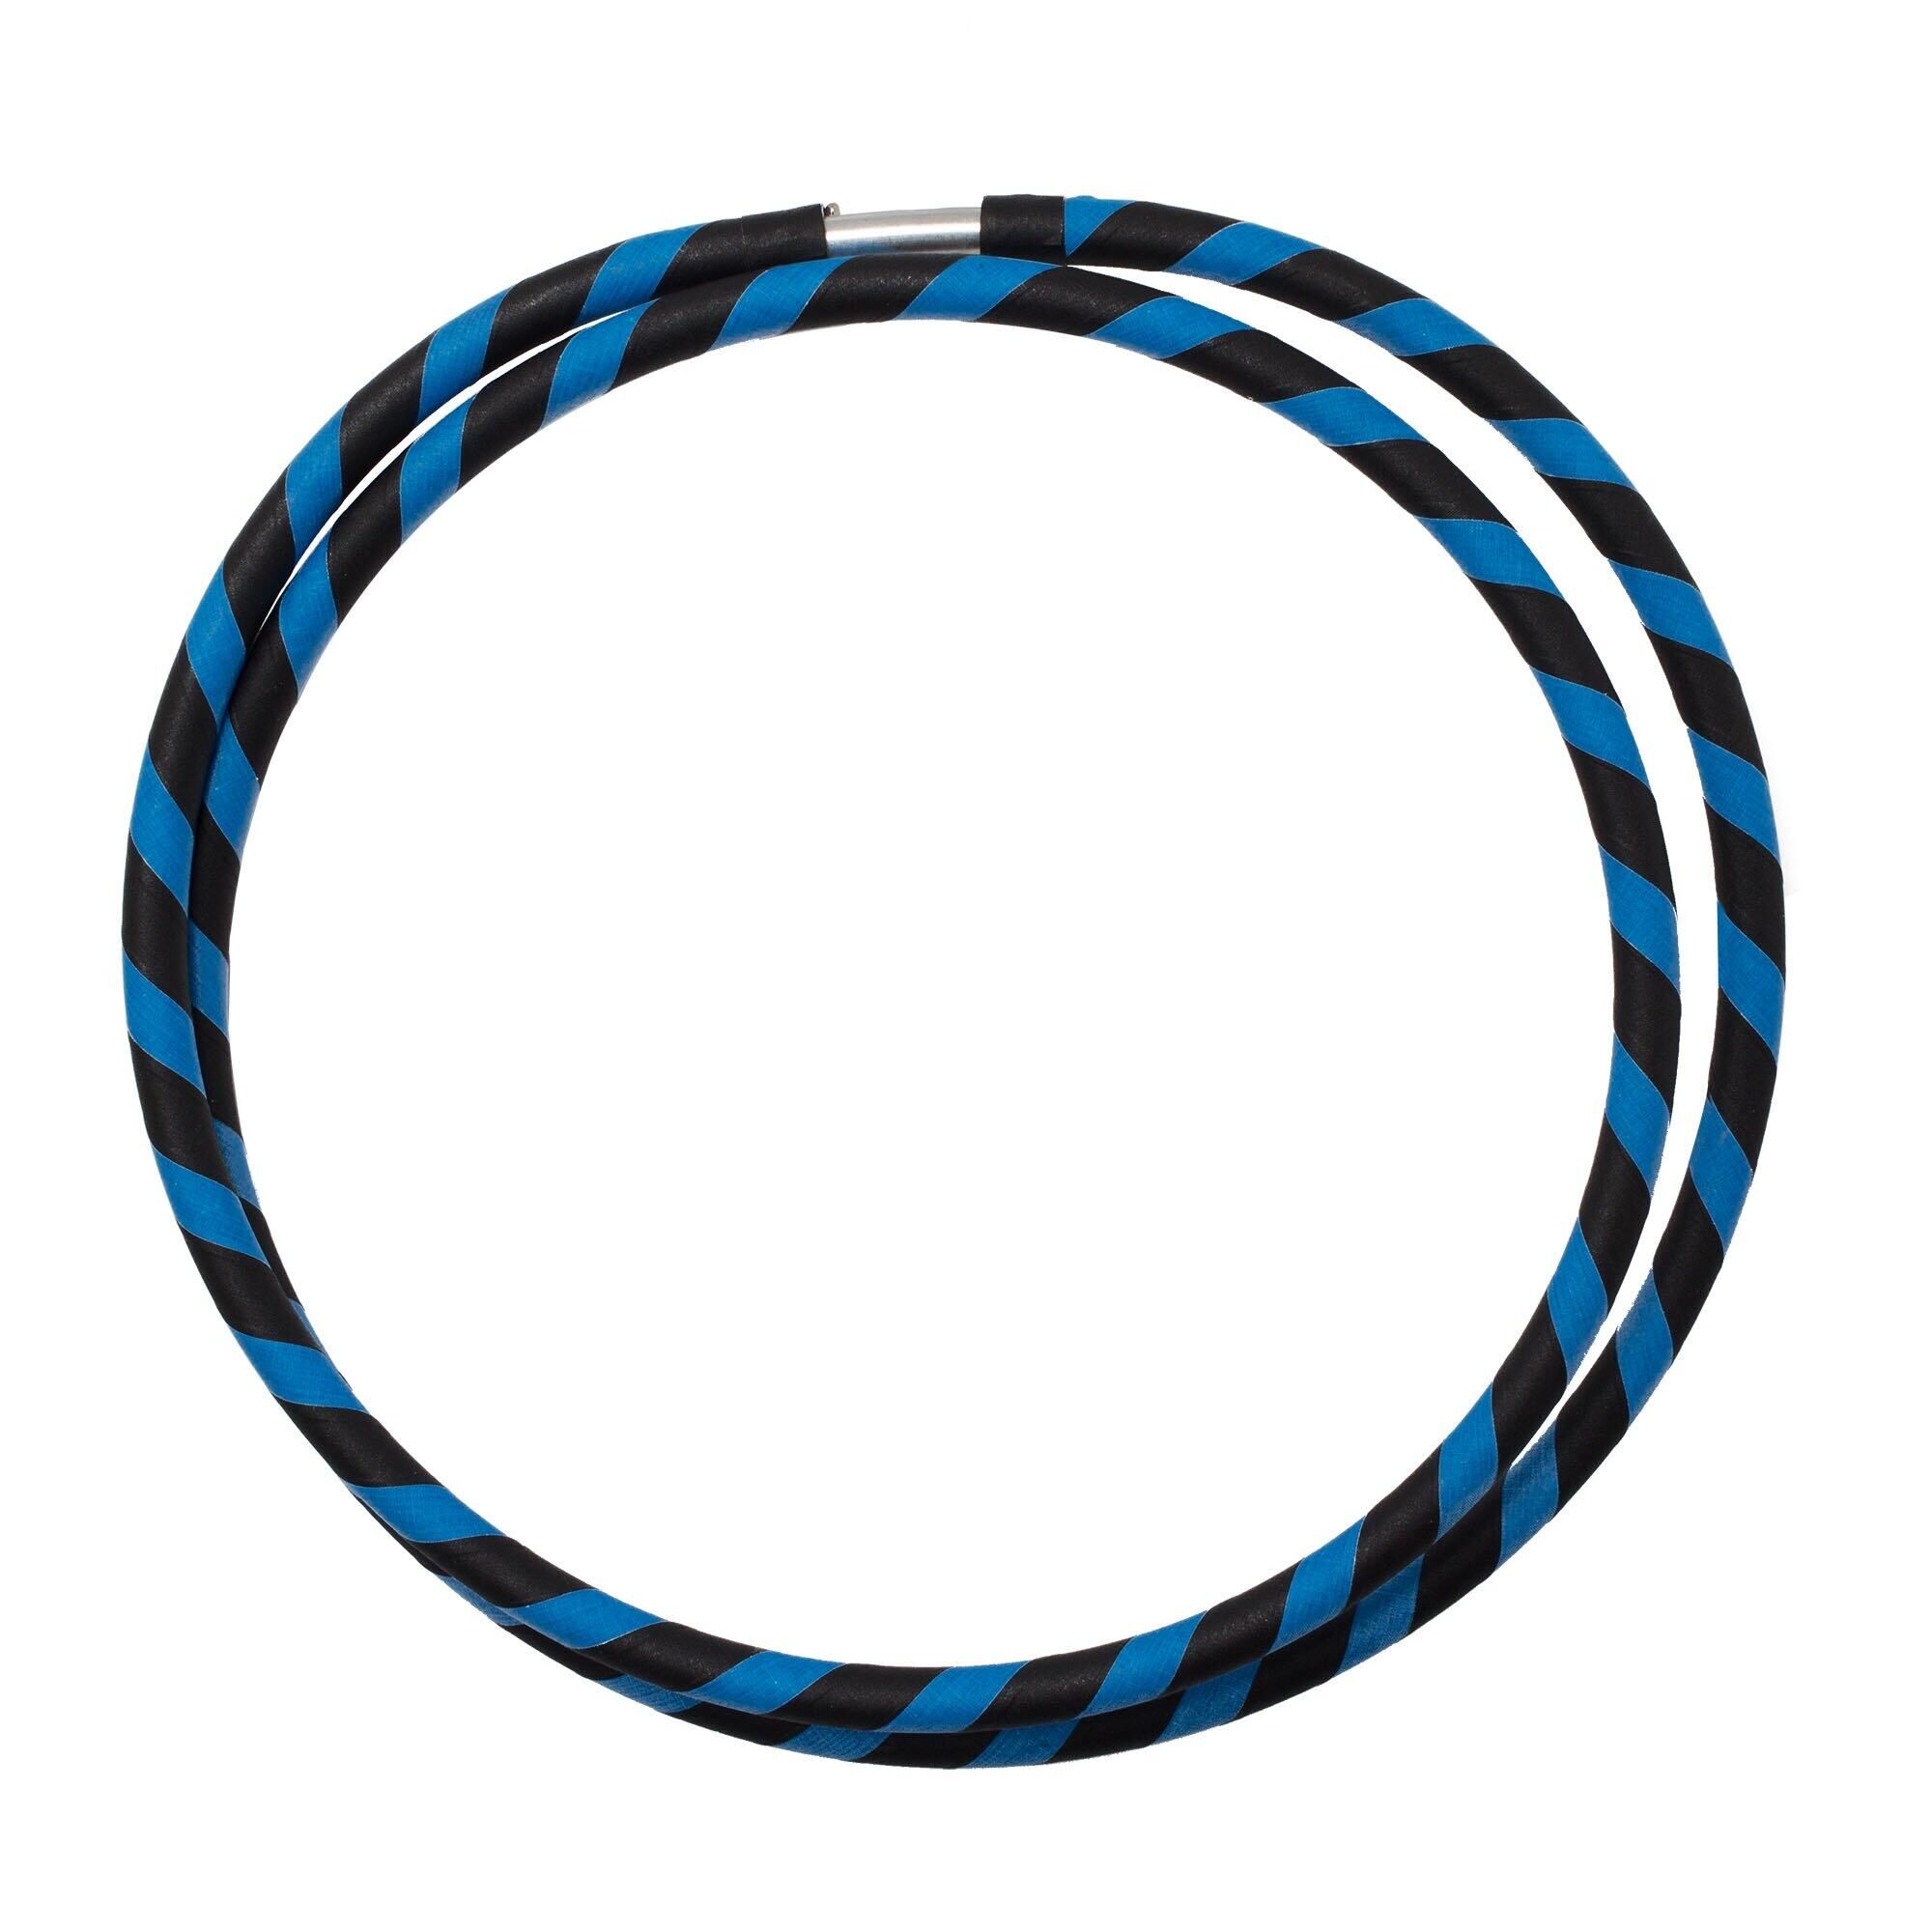 ECHO Echo Hoops - Collapsible Travel Hoop-Black/Blue